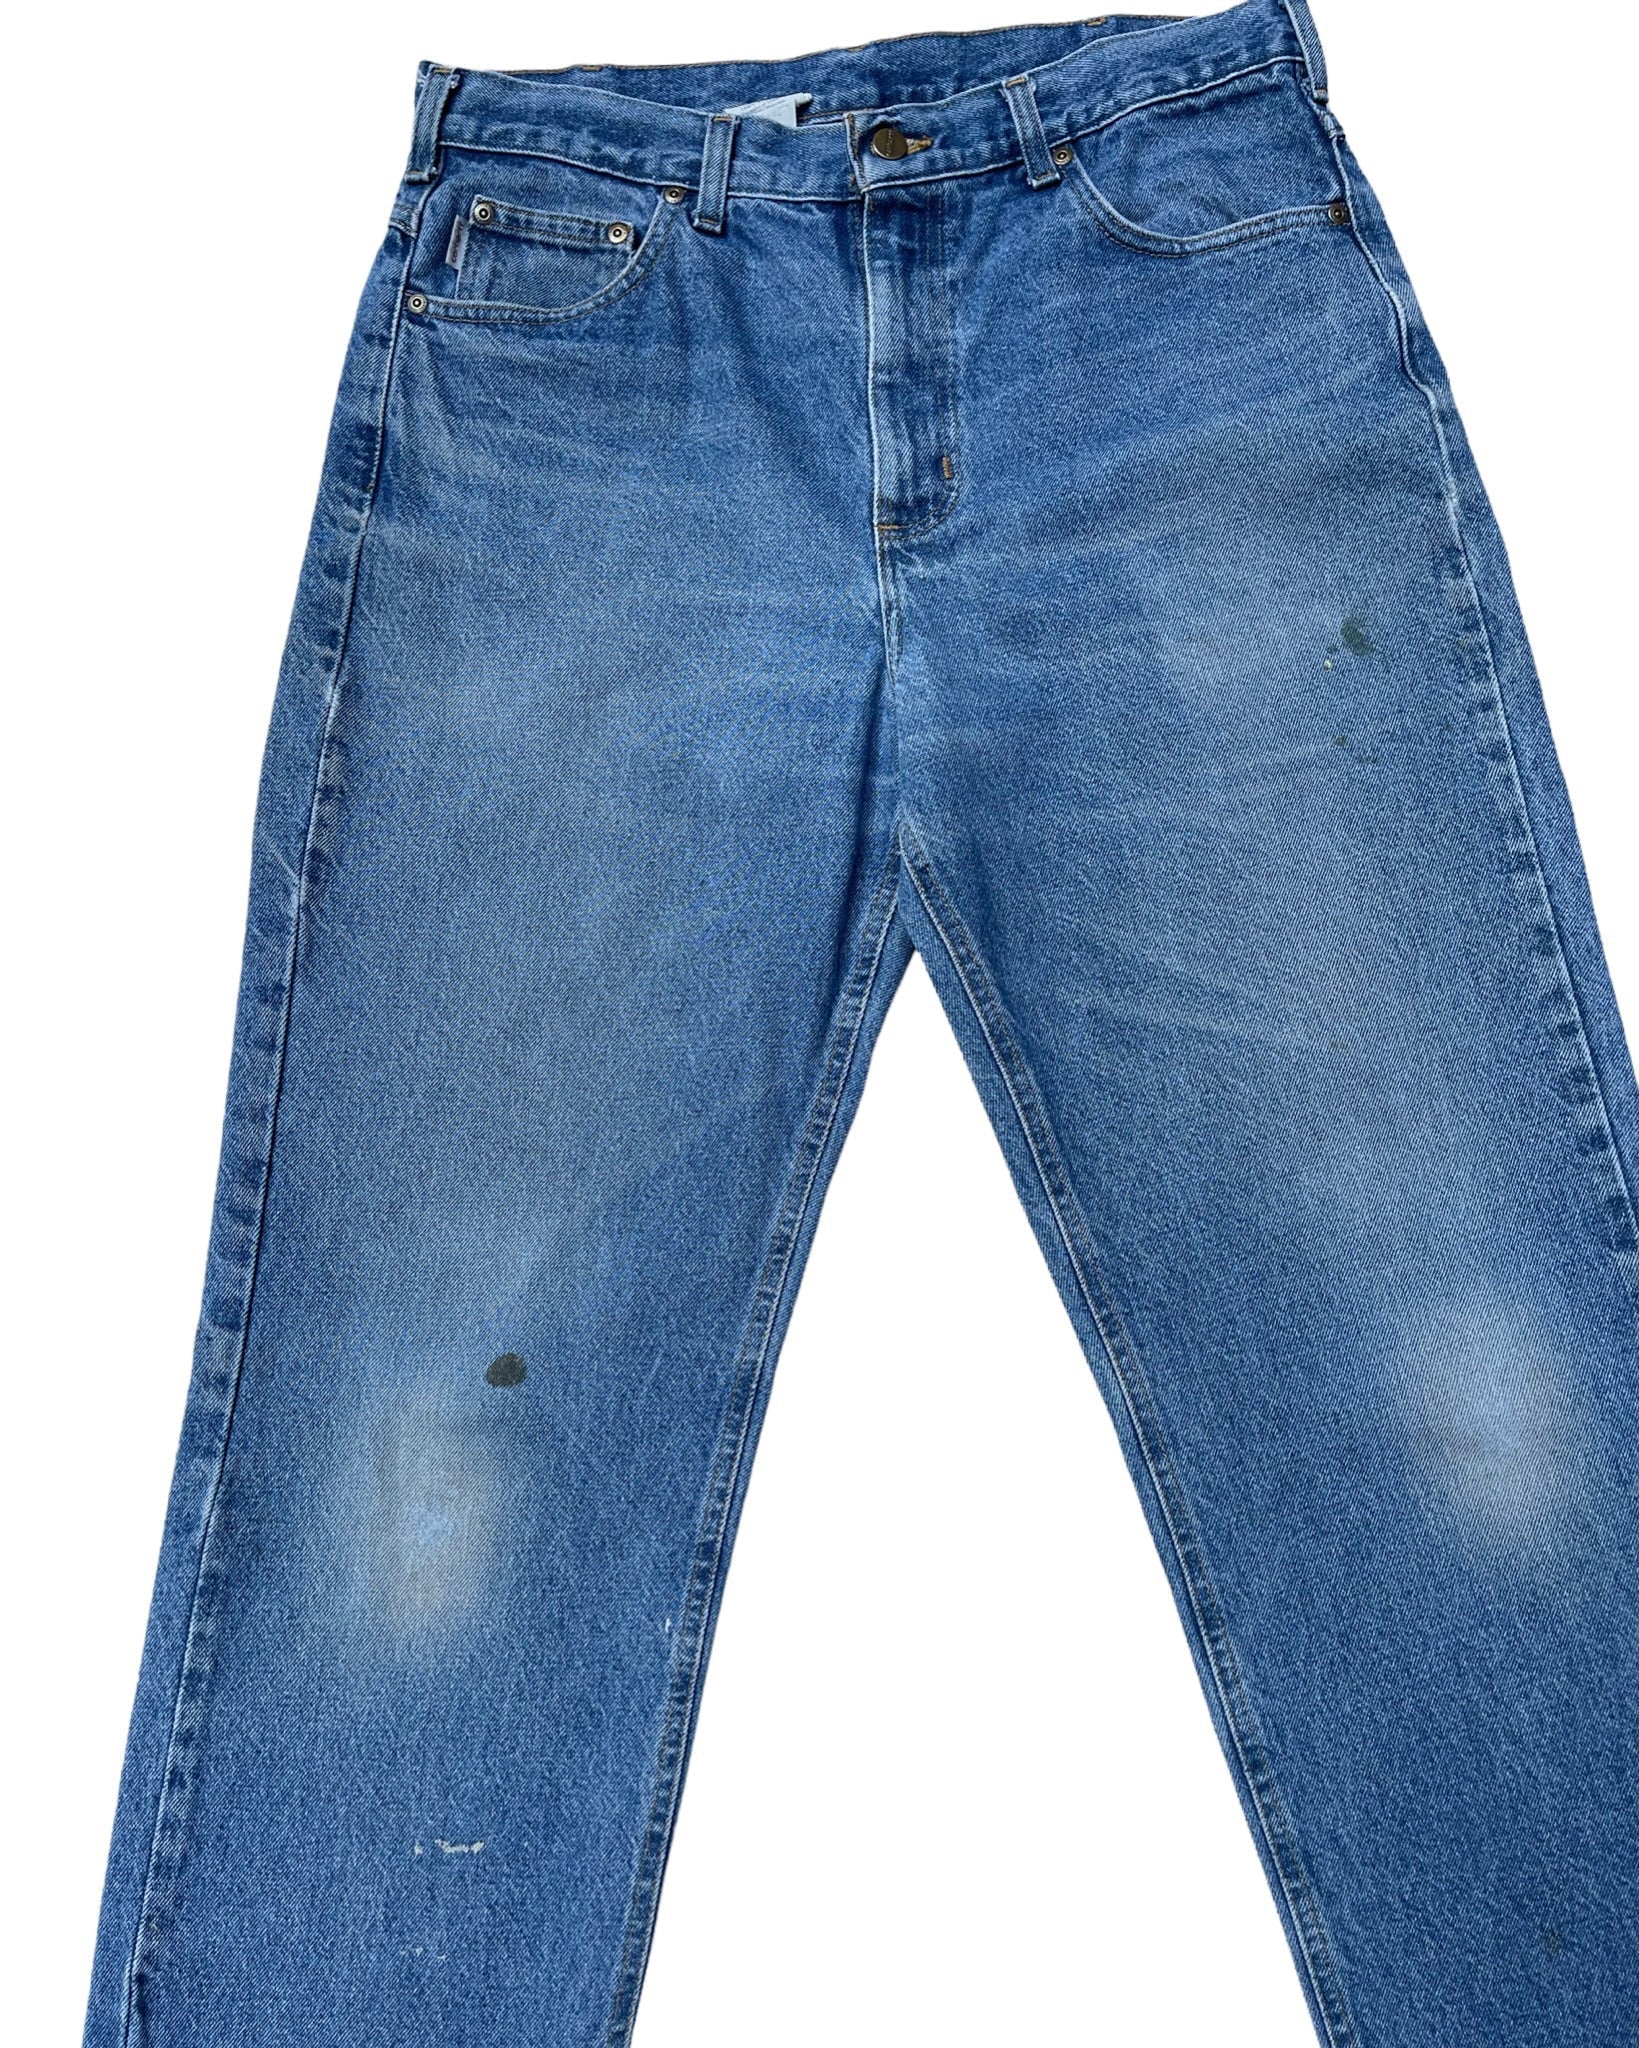  Jeans Carhartt Jean - B160DST - W36 L32 - PLOMOSTORE